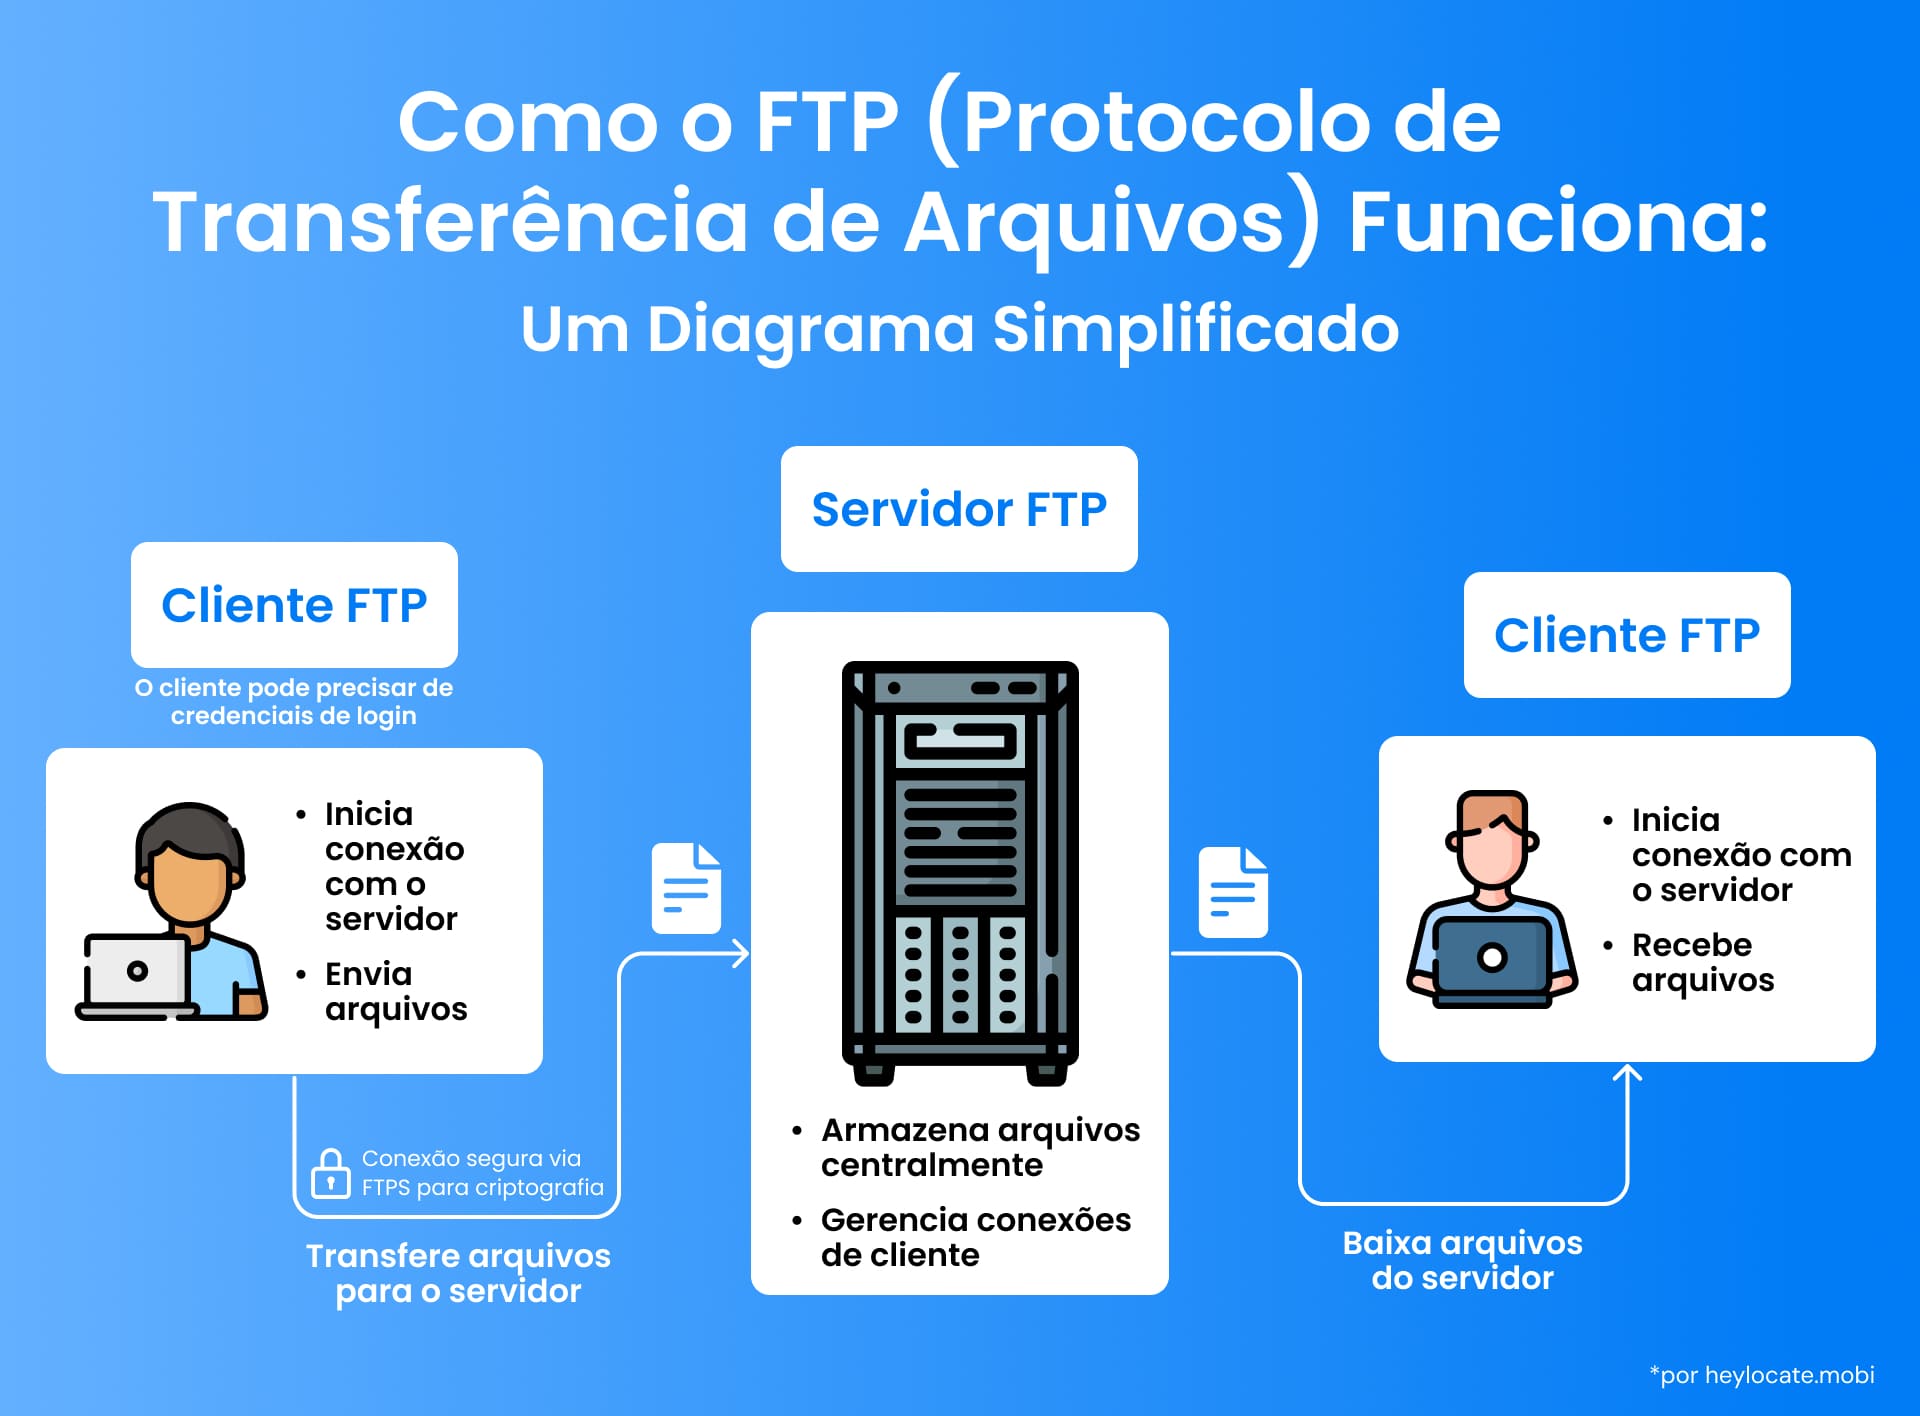 Uma ilustração de como o FTP funciona, mostrando como um cliente FTP envia arquivos por meio de um servidor FTP central e outro cliente FTP os recebe